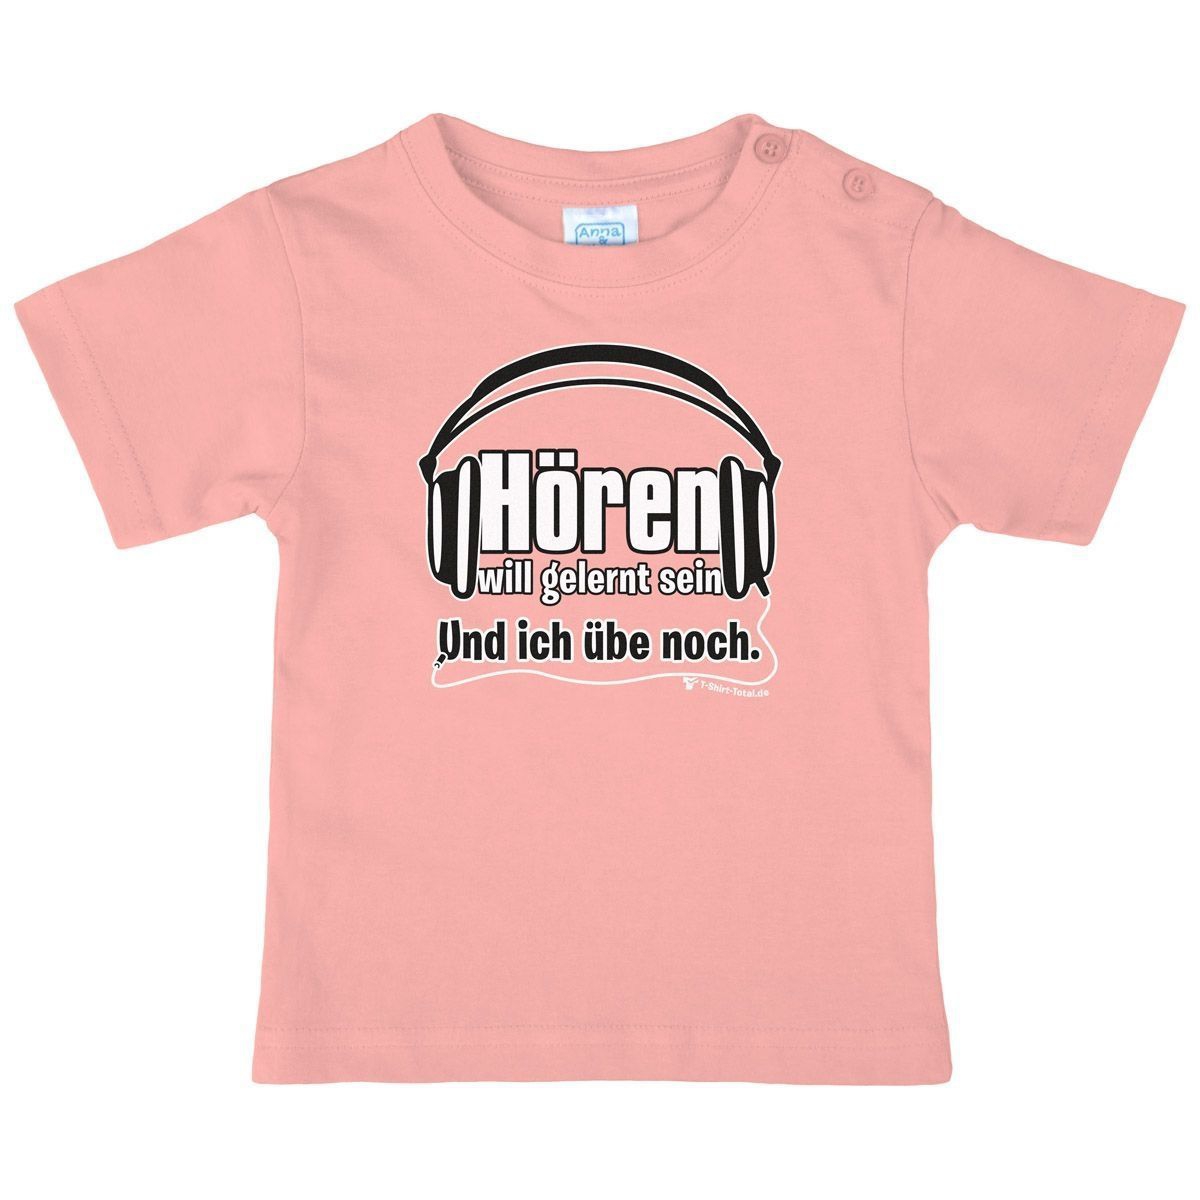 Hören will gelernt sein Kinder T-Shirt rosa 104